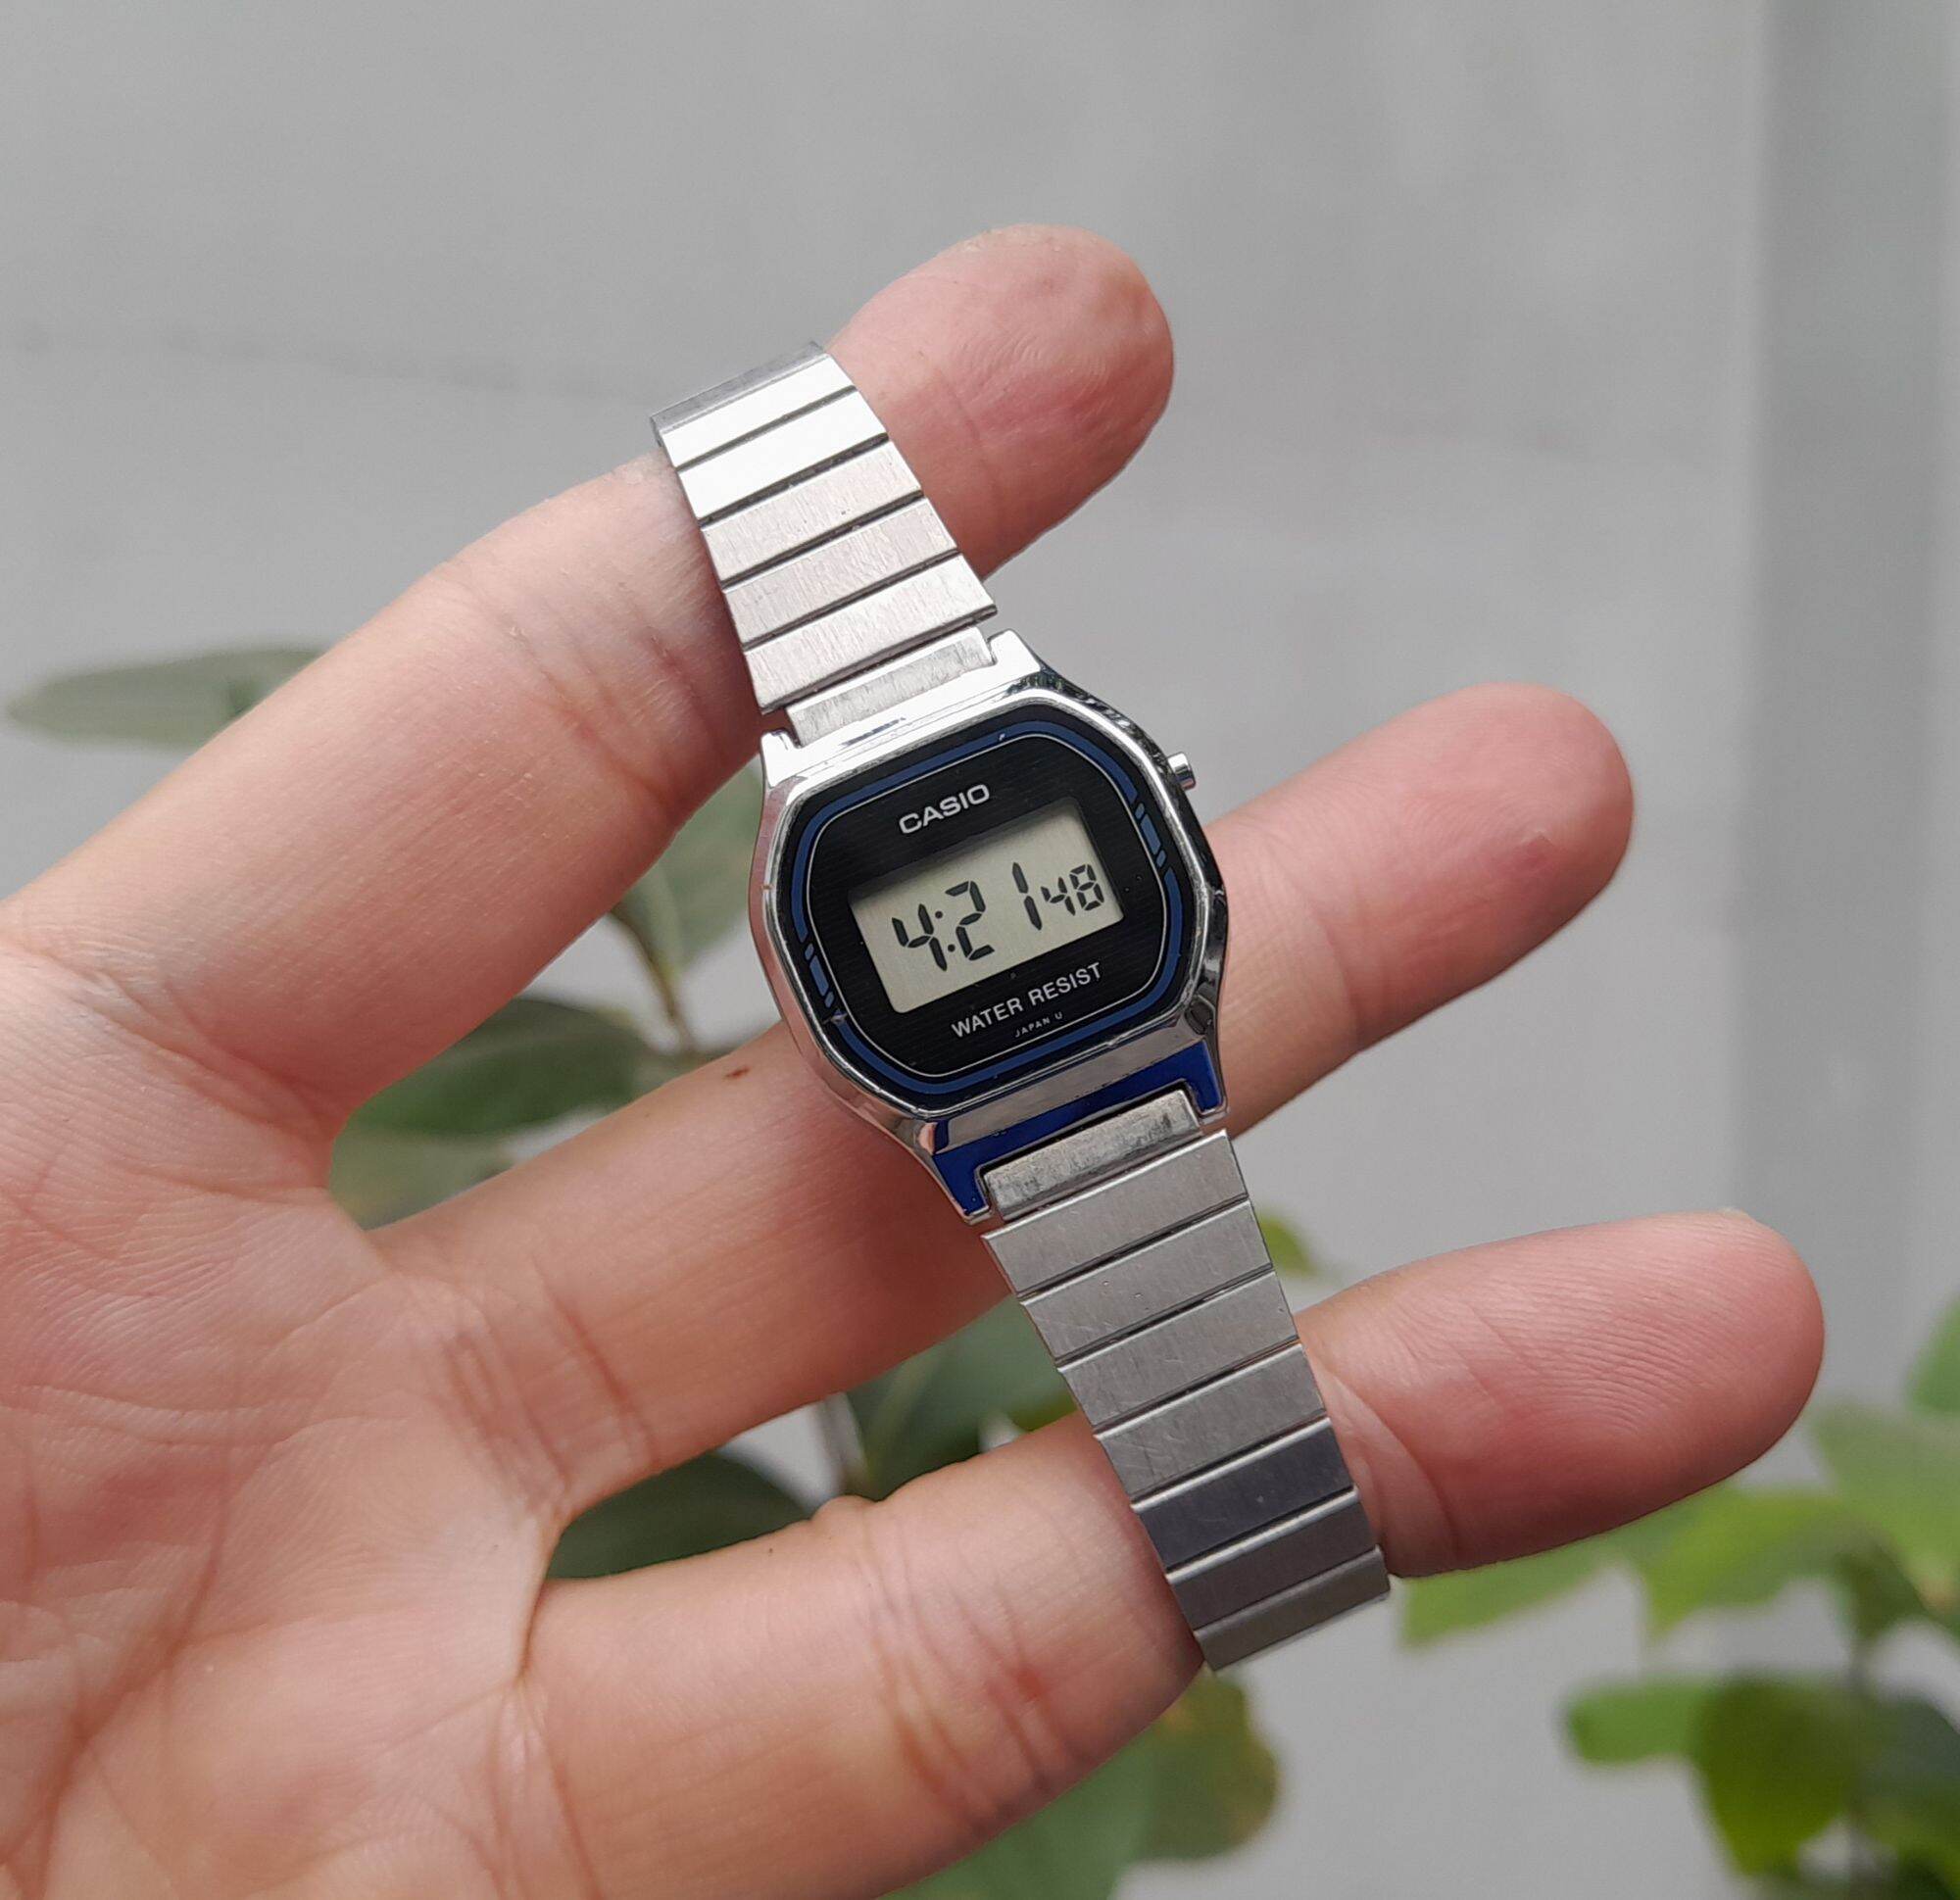 Đồng hồ điện tử NỮ Casio L500 nhỏ xinh nguyên zin